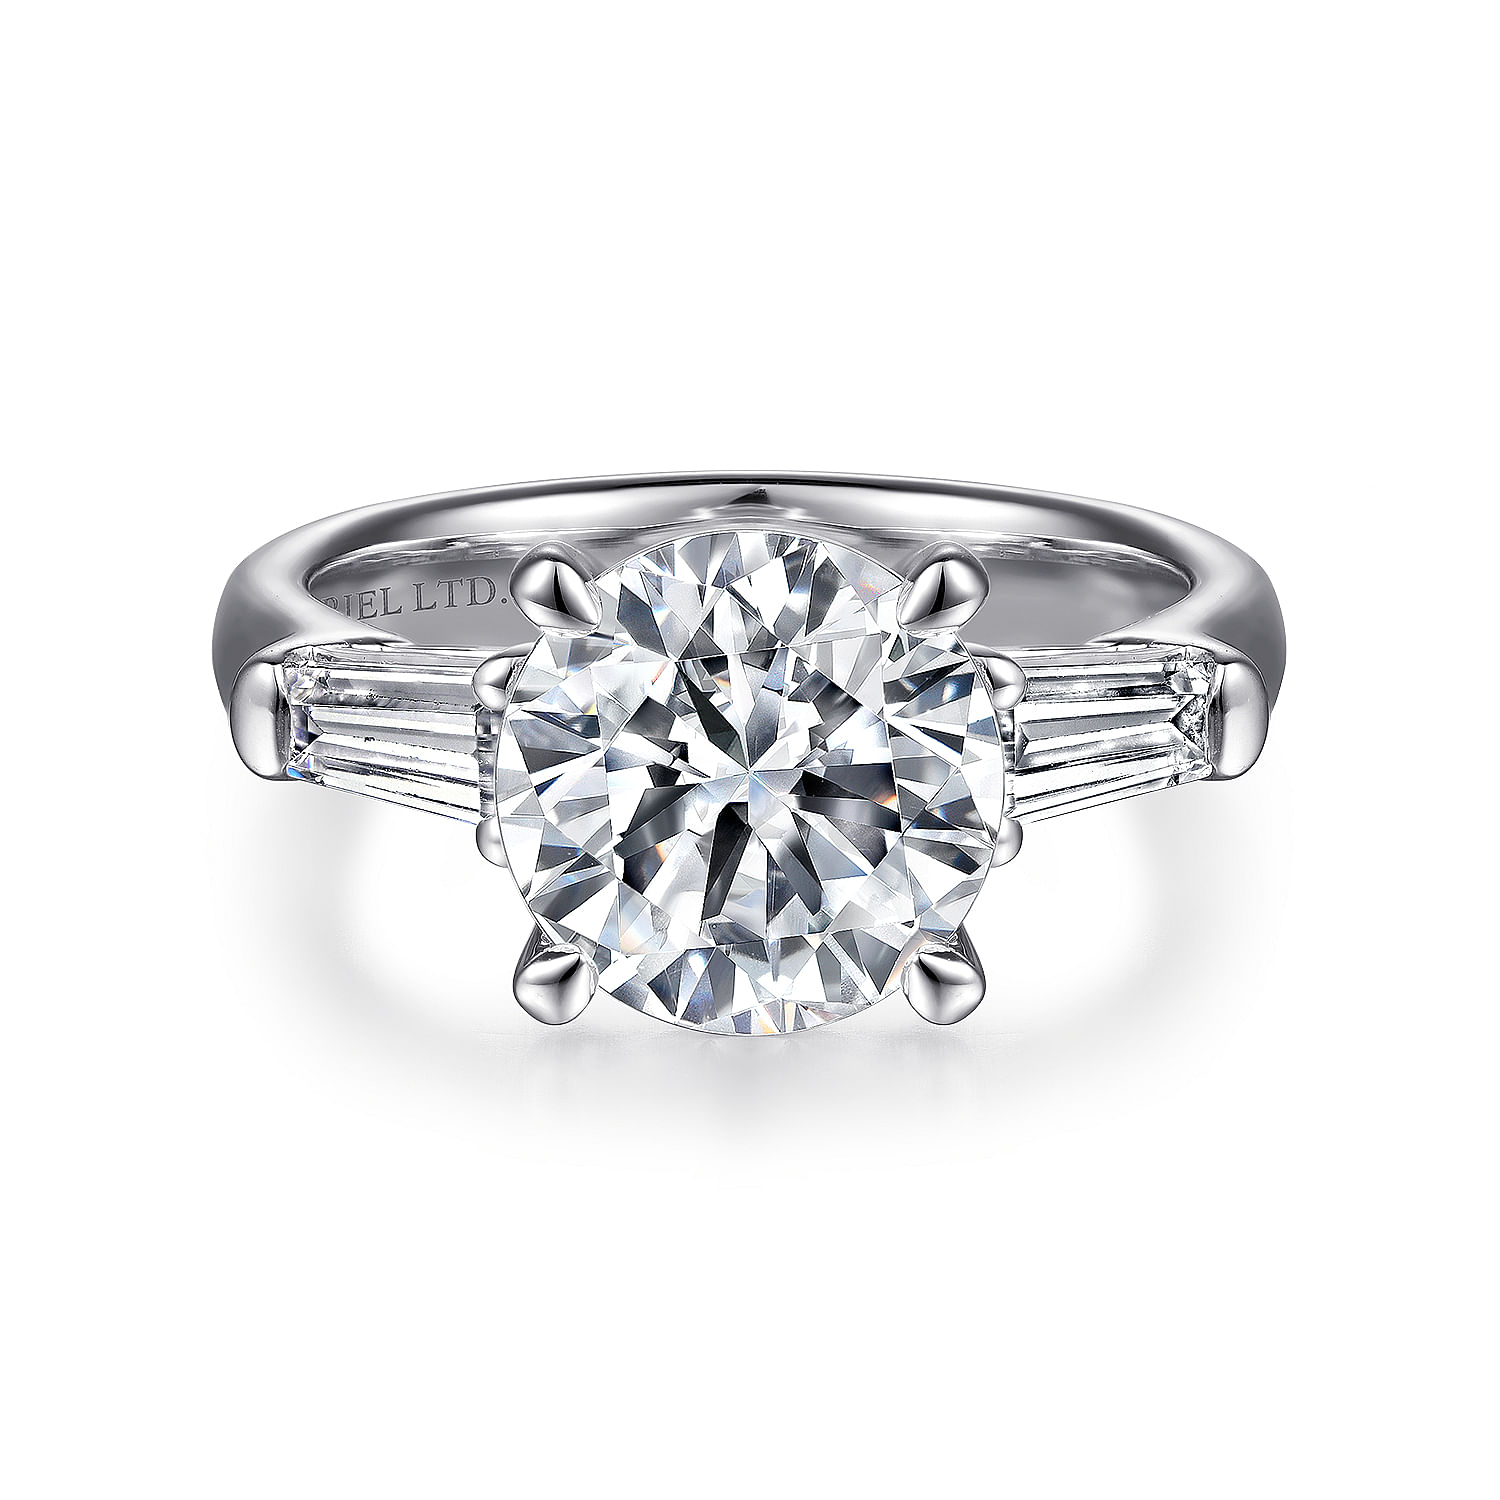 Cammie - 18K White Gold Round Three Stone Diamond Engagement Ring